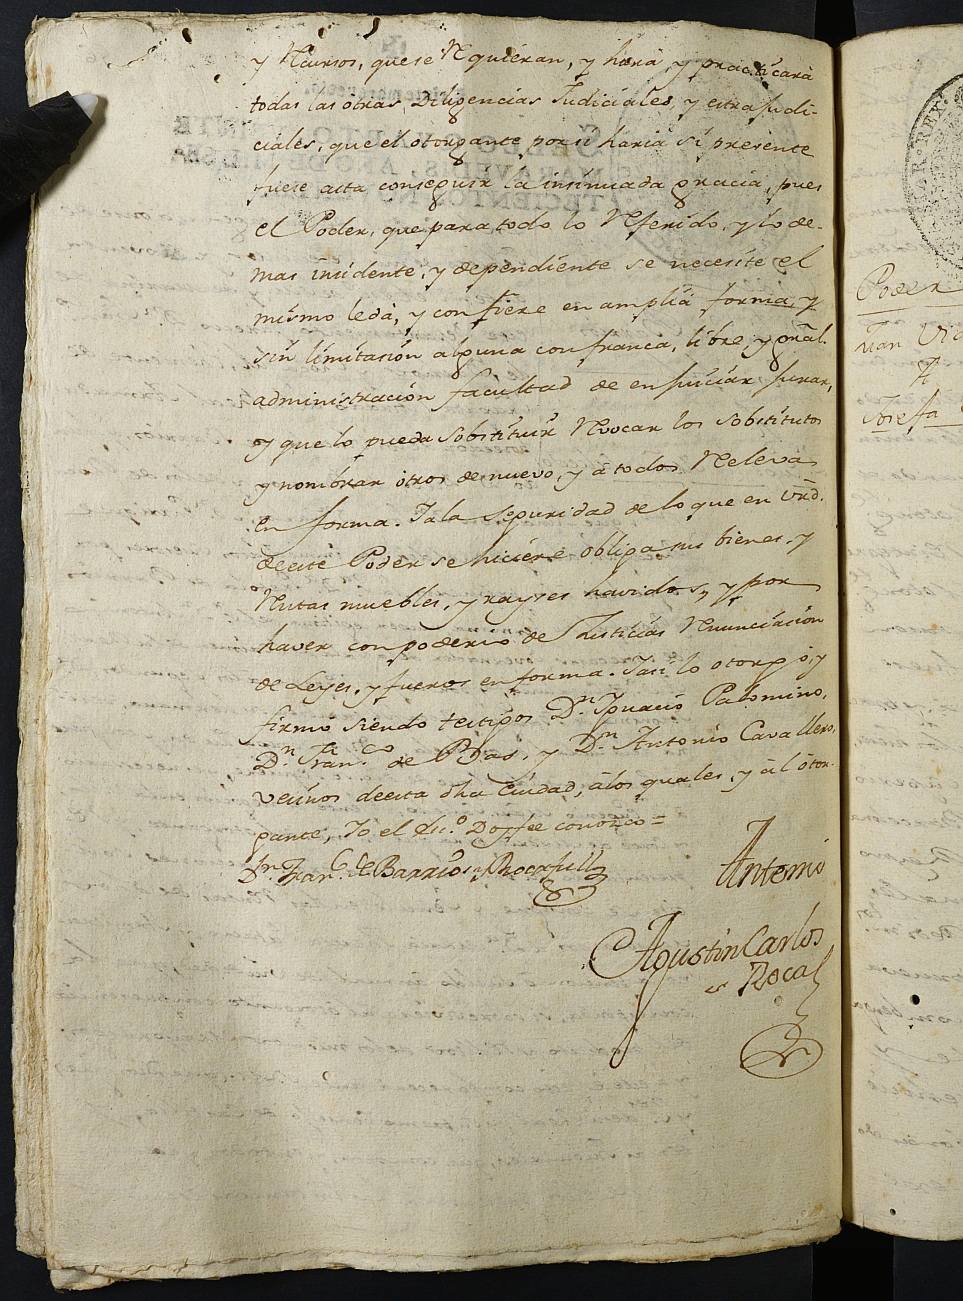 Registro de Agustín Carlos Roca, Cartagena: Escribano de Marina. Año 1790.